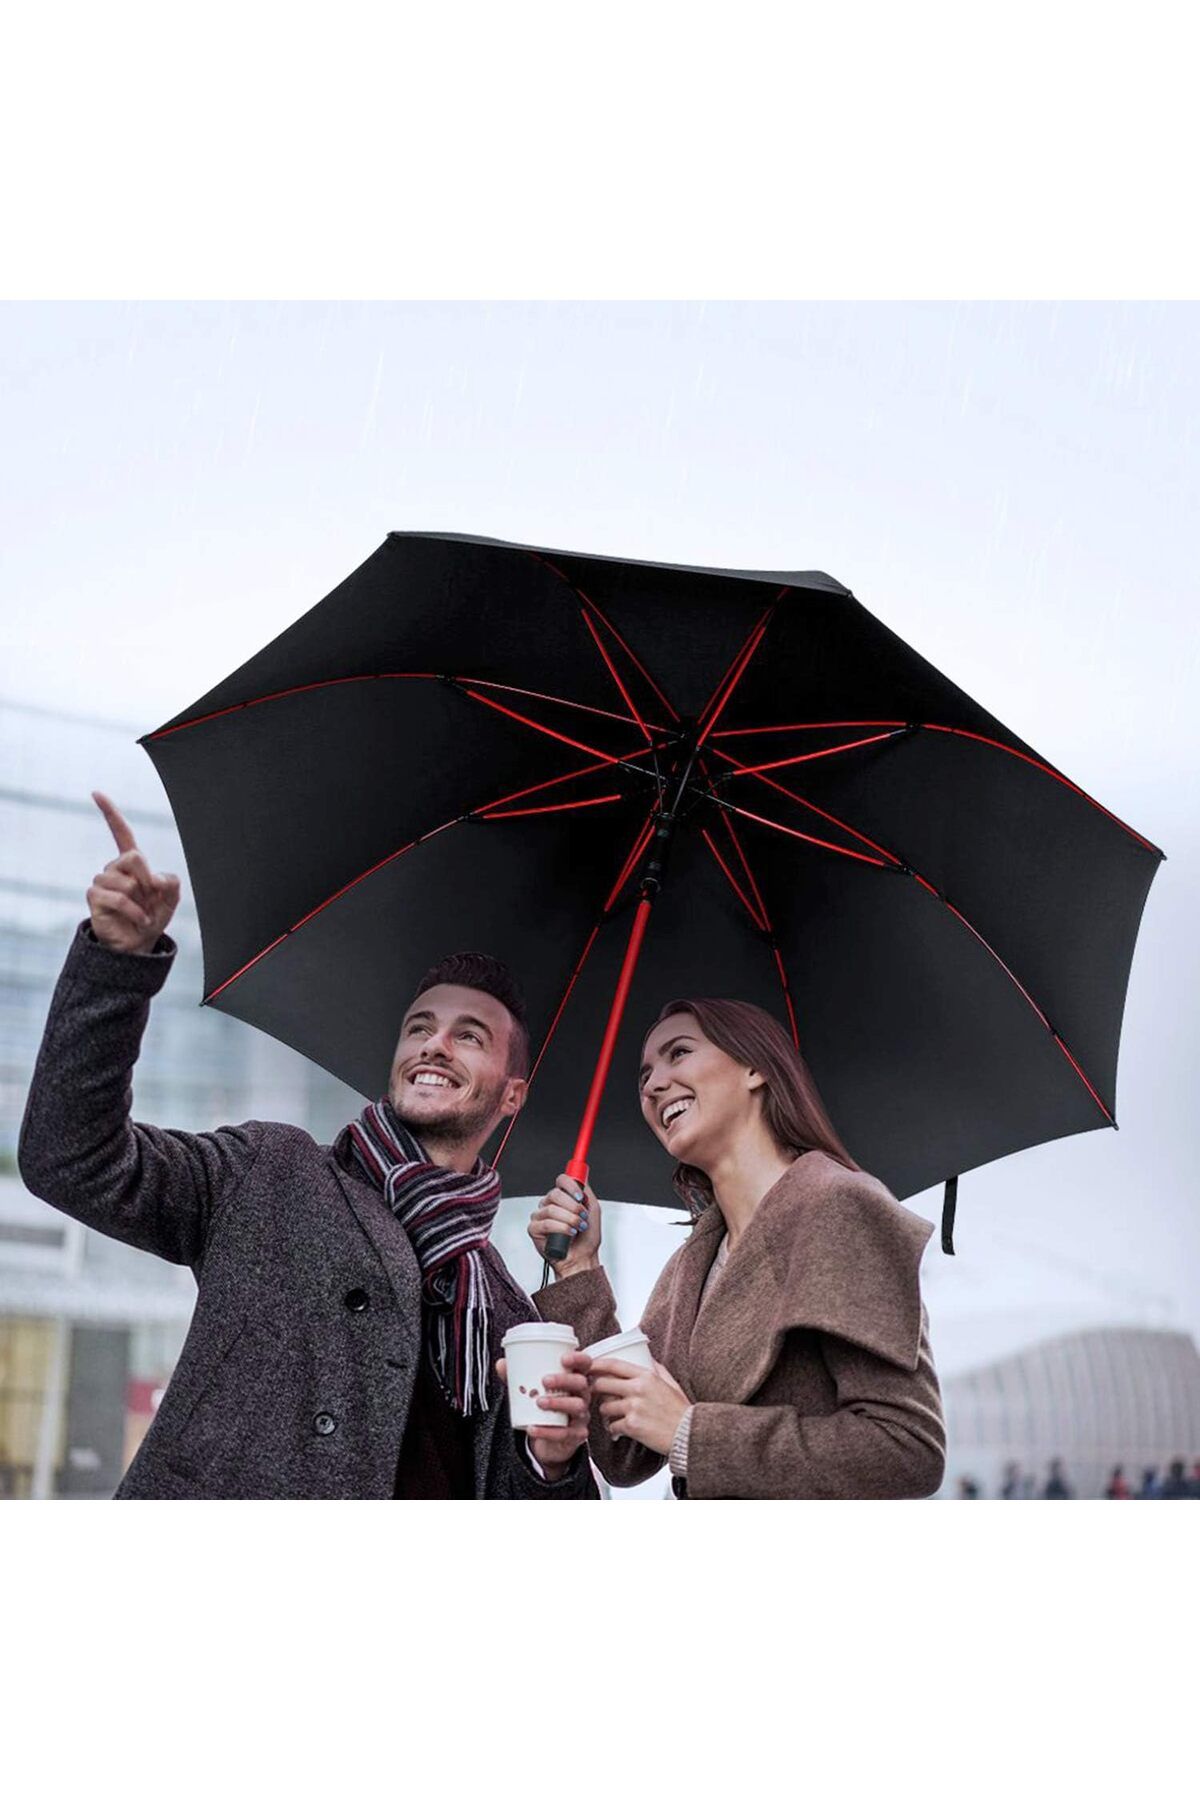 AVİPOLES Şemsiye Protokol Şemsiye Lüx Ürün Özel Kılıflı 3 Farklı Tel Rengi Kırmızı Lacivert Siyah